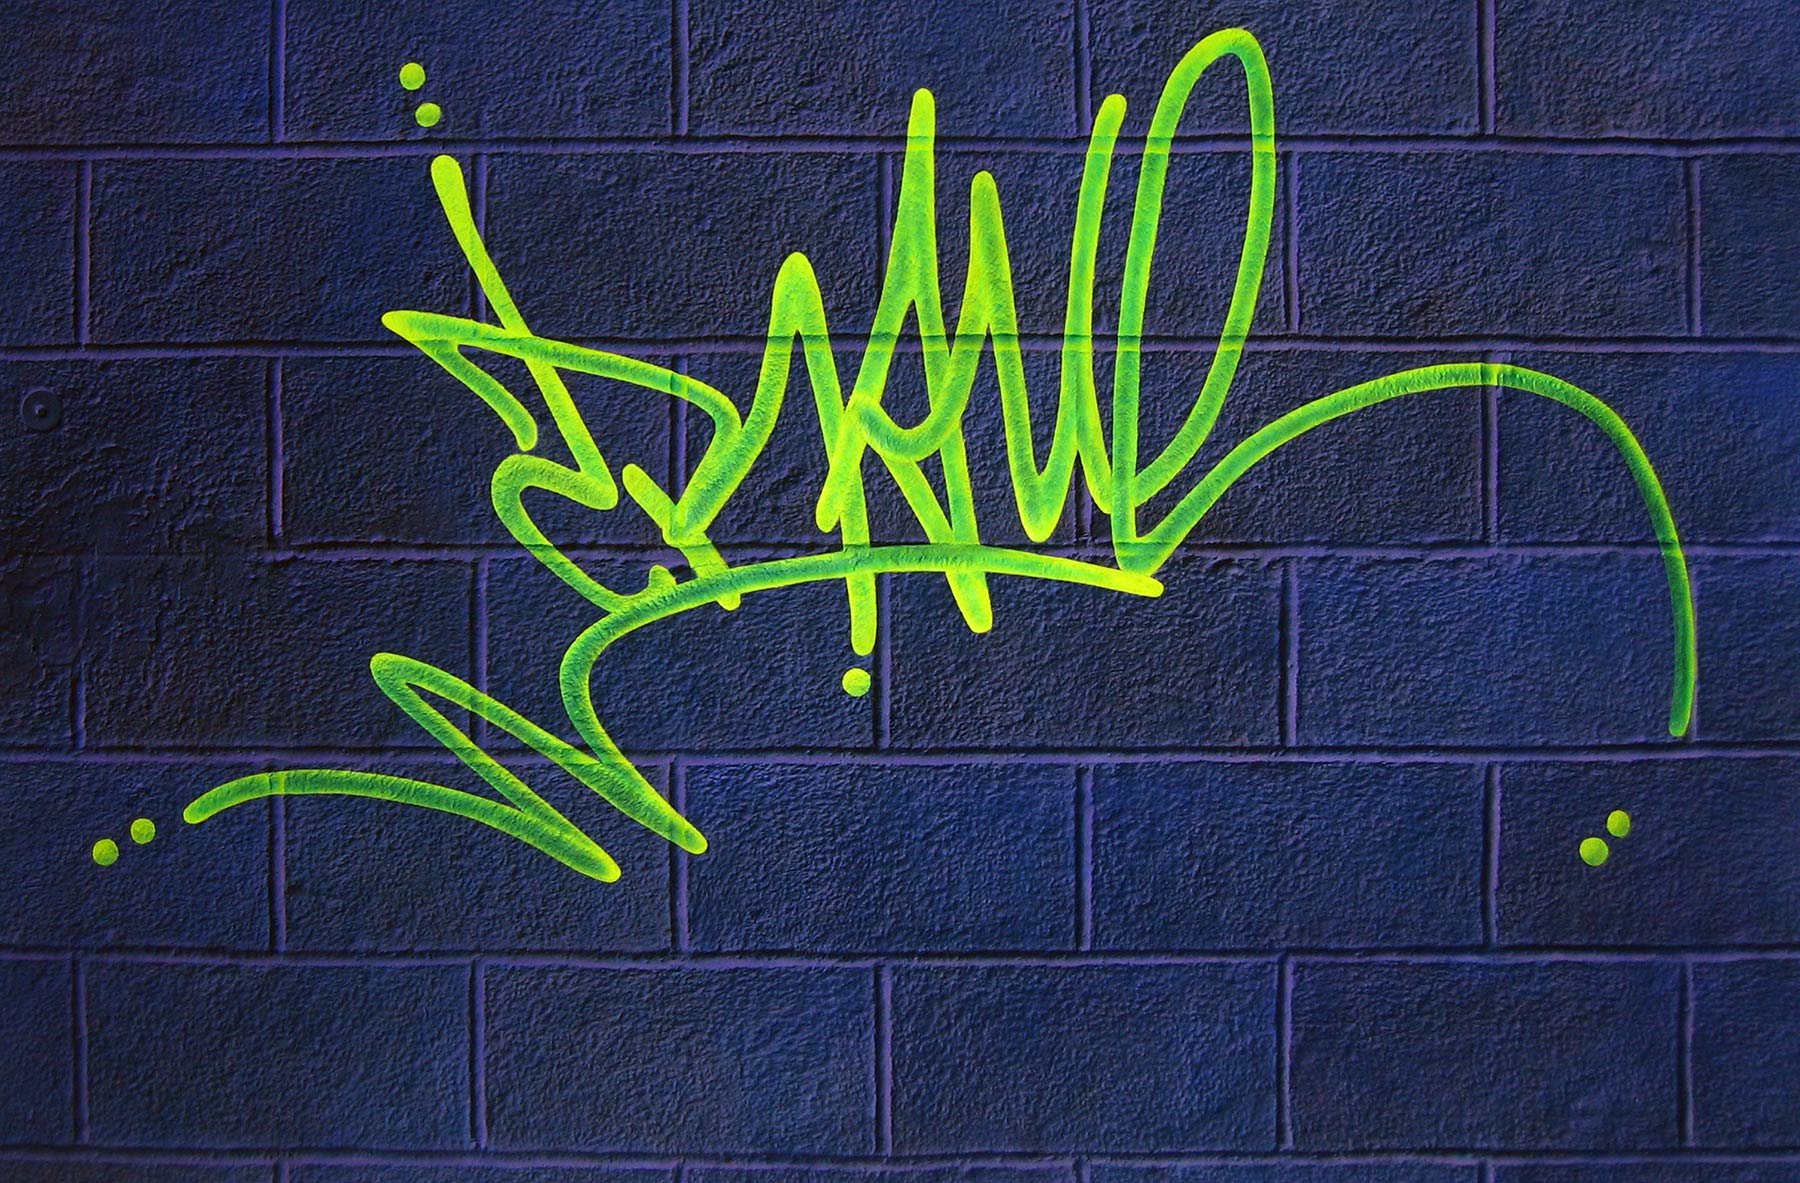 Тег tag. Граффити. Теги граффити. Теги на стенах. Граффити роспись.